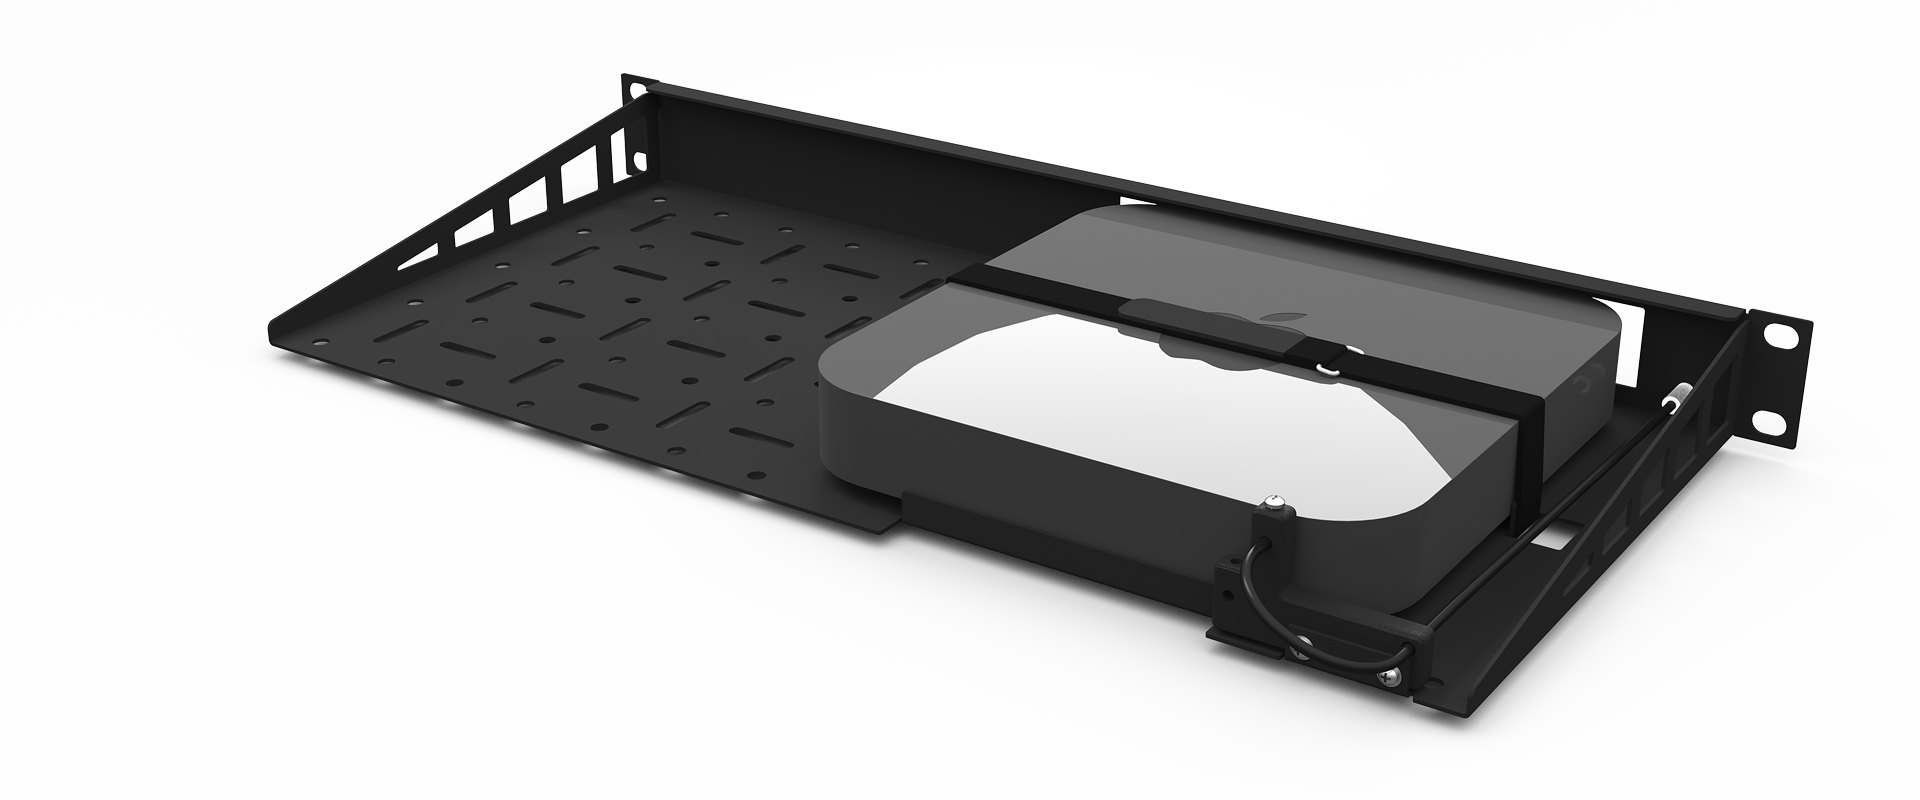 Mac Mini rack mount kit - UM-APP-001